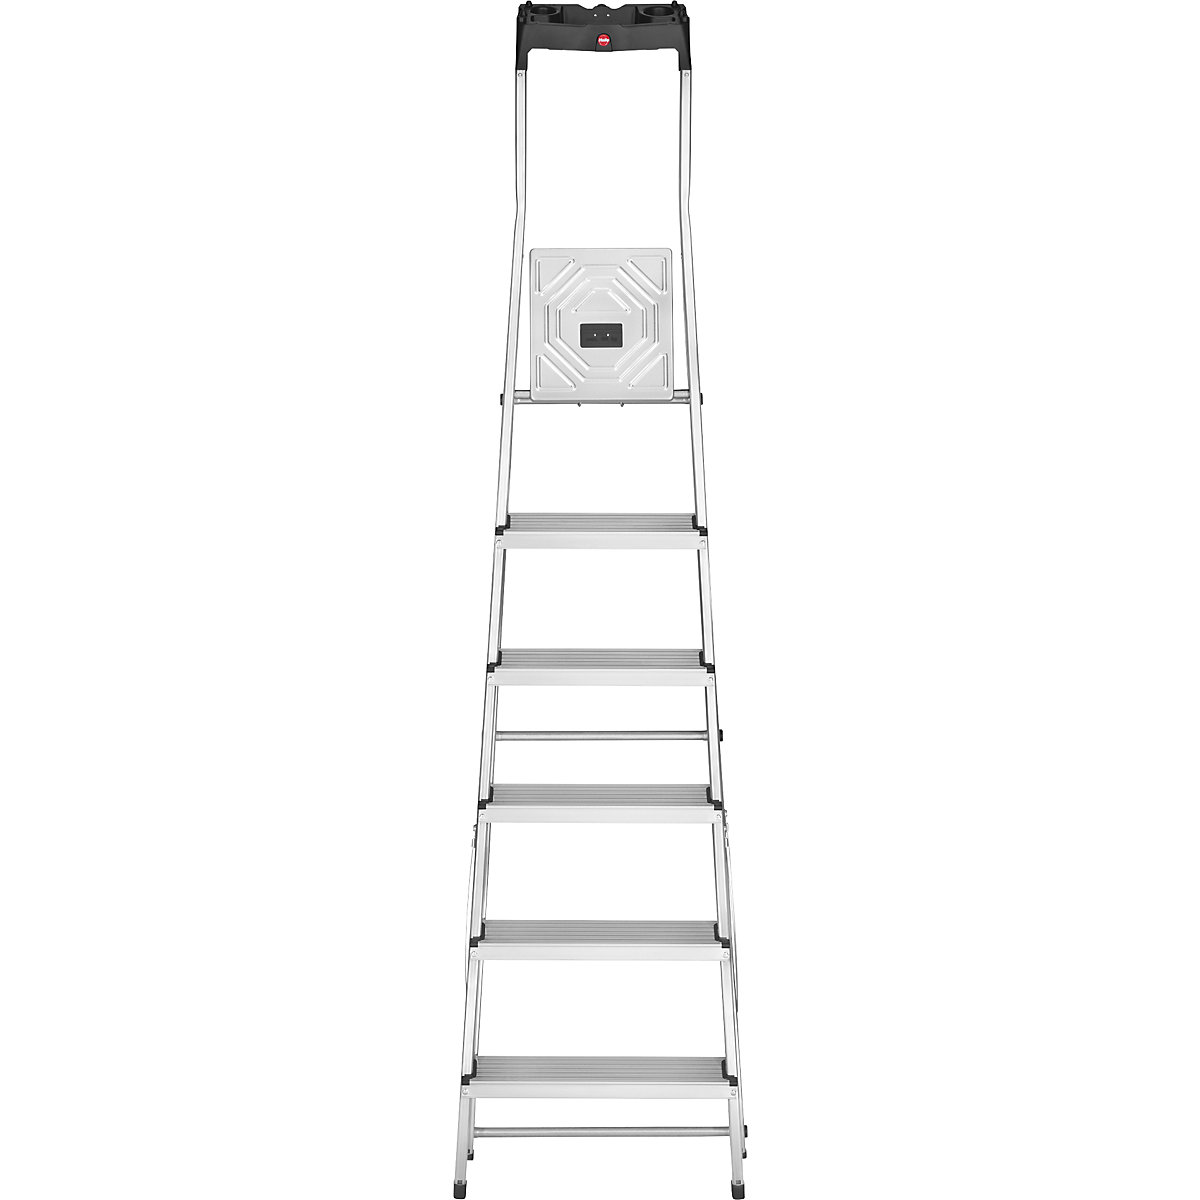 Aluminijasta dvokraka lestev s stopnicami StandardLine L60 – Hailo (Slika izdelka 14)